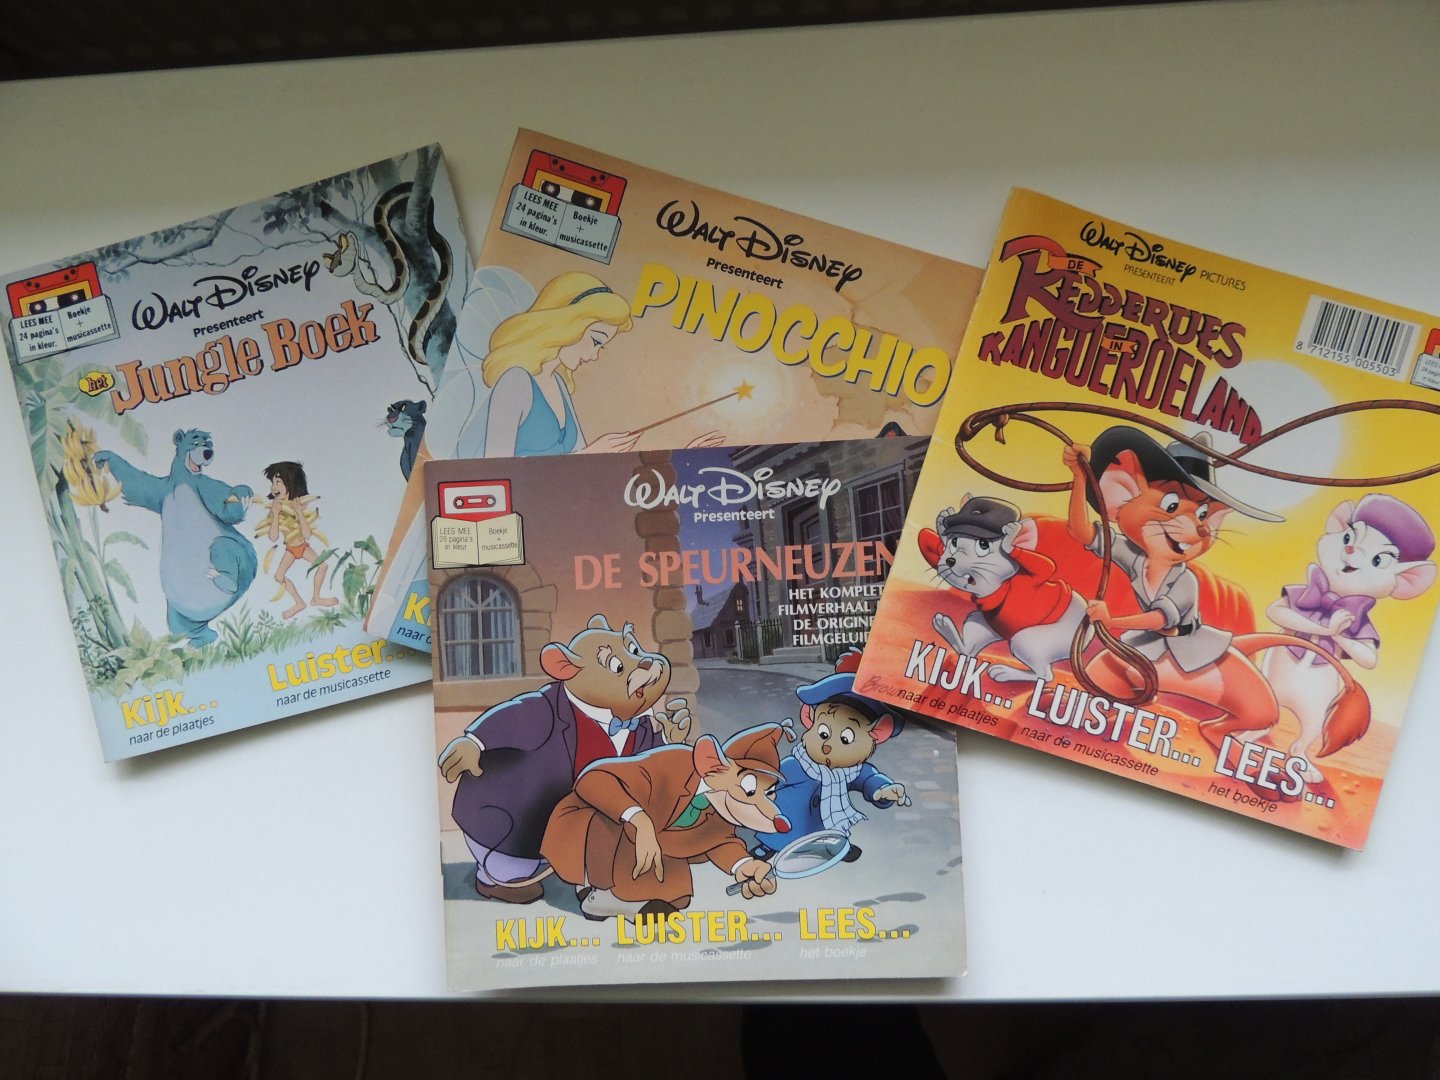 Disney, Walt - De speurneuzen, de reddertjes in kangoeroeland, pinocchio, jungle boek, Peter Pan en Wendy